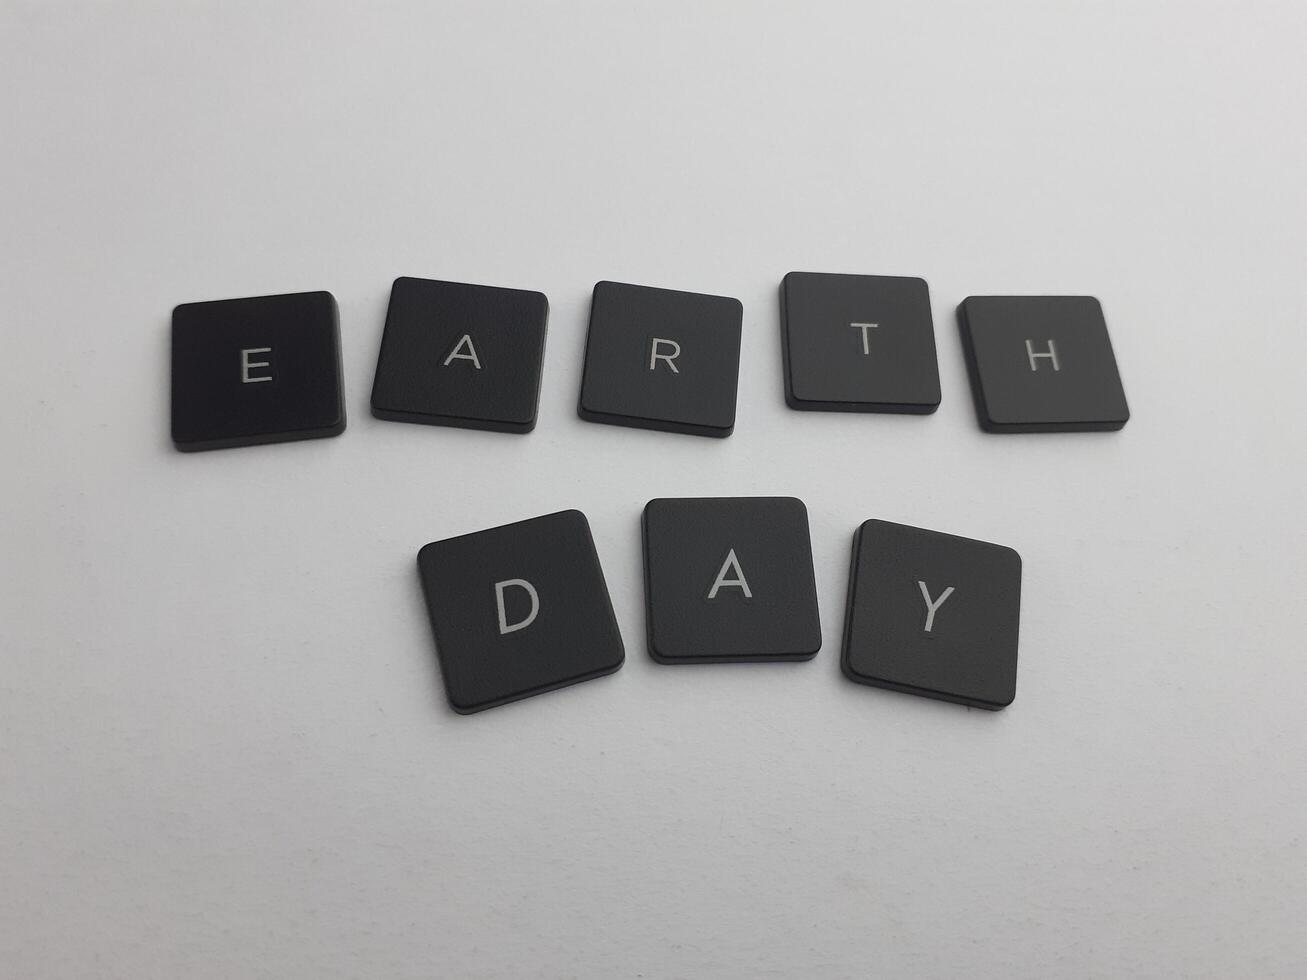 de ord jord dag stavat ut med svart knappar på en vit bakgrund foto